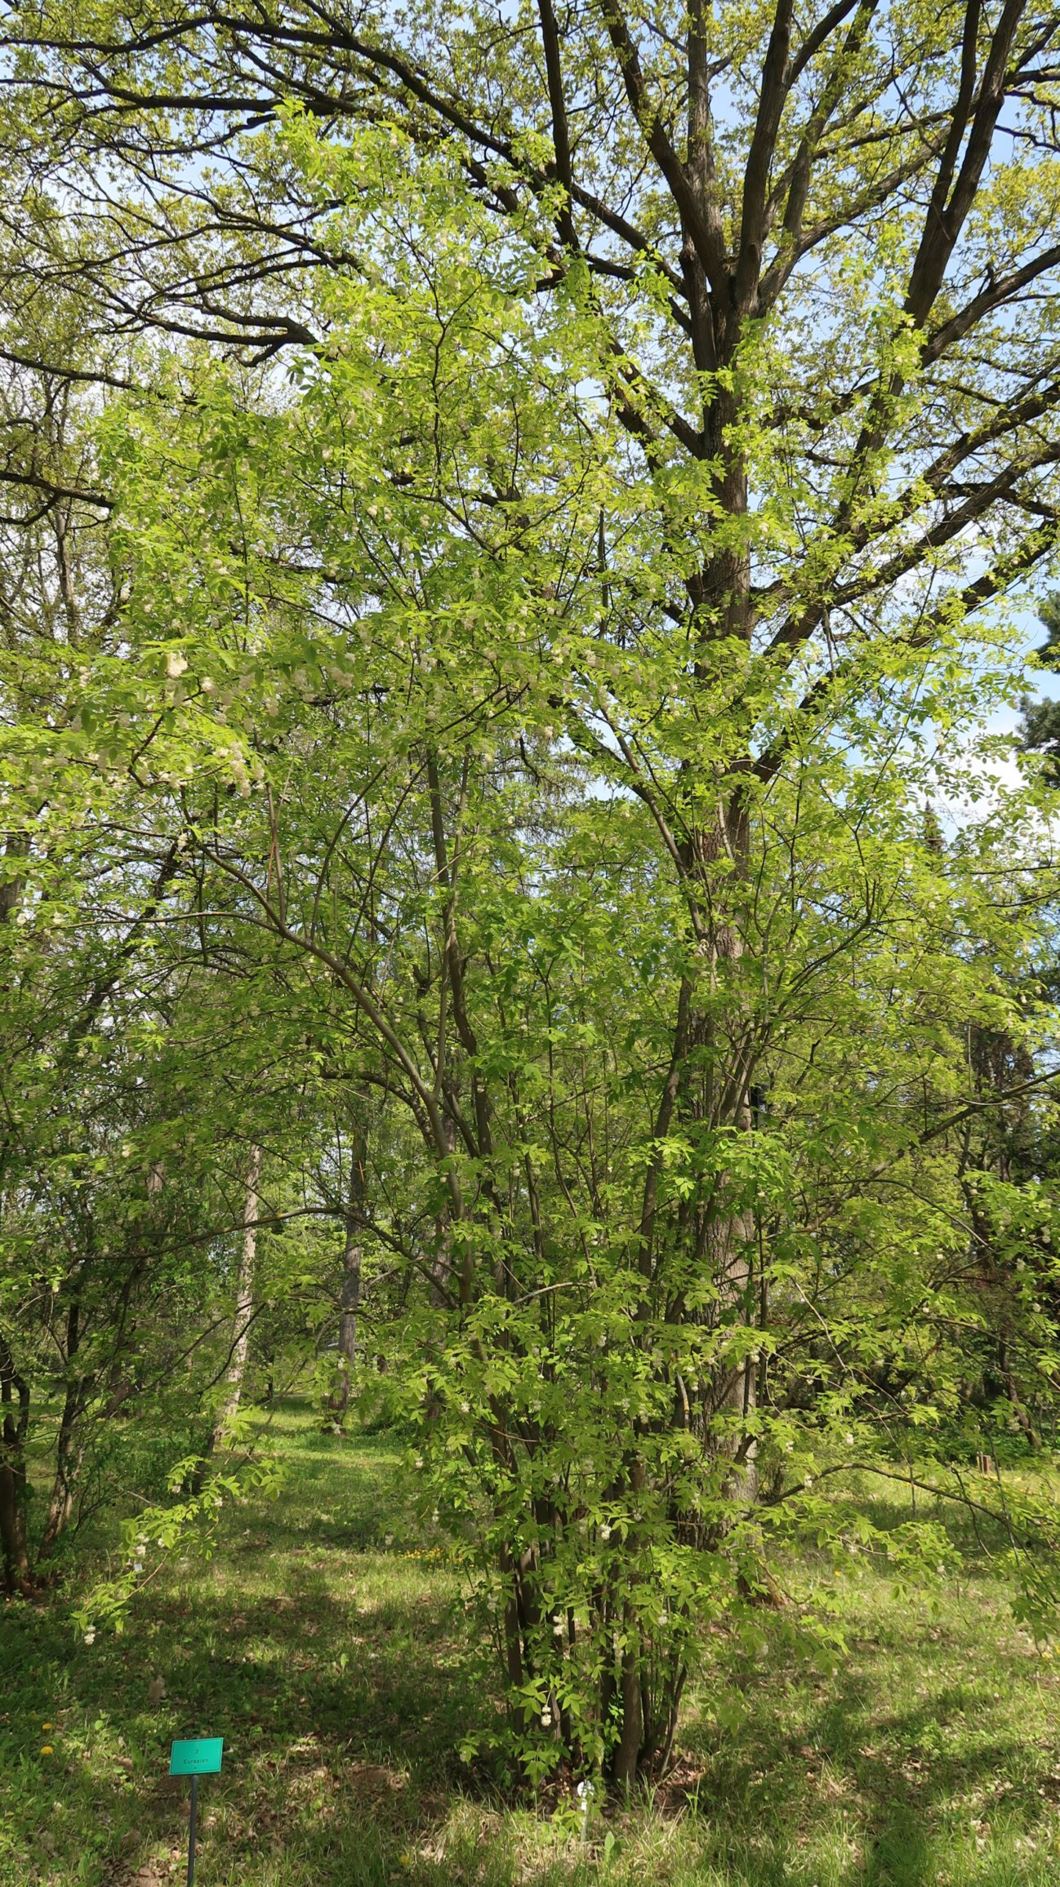 Staphylea pinnata - Gewöhnliche Pimpernuss, European Bladdernut